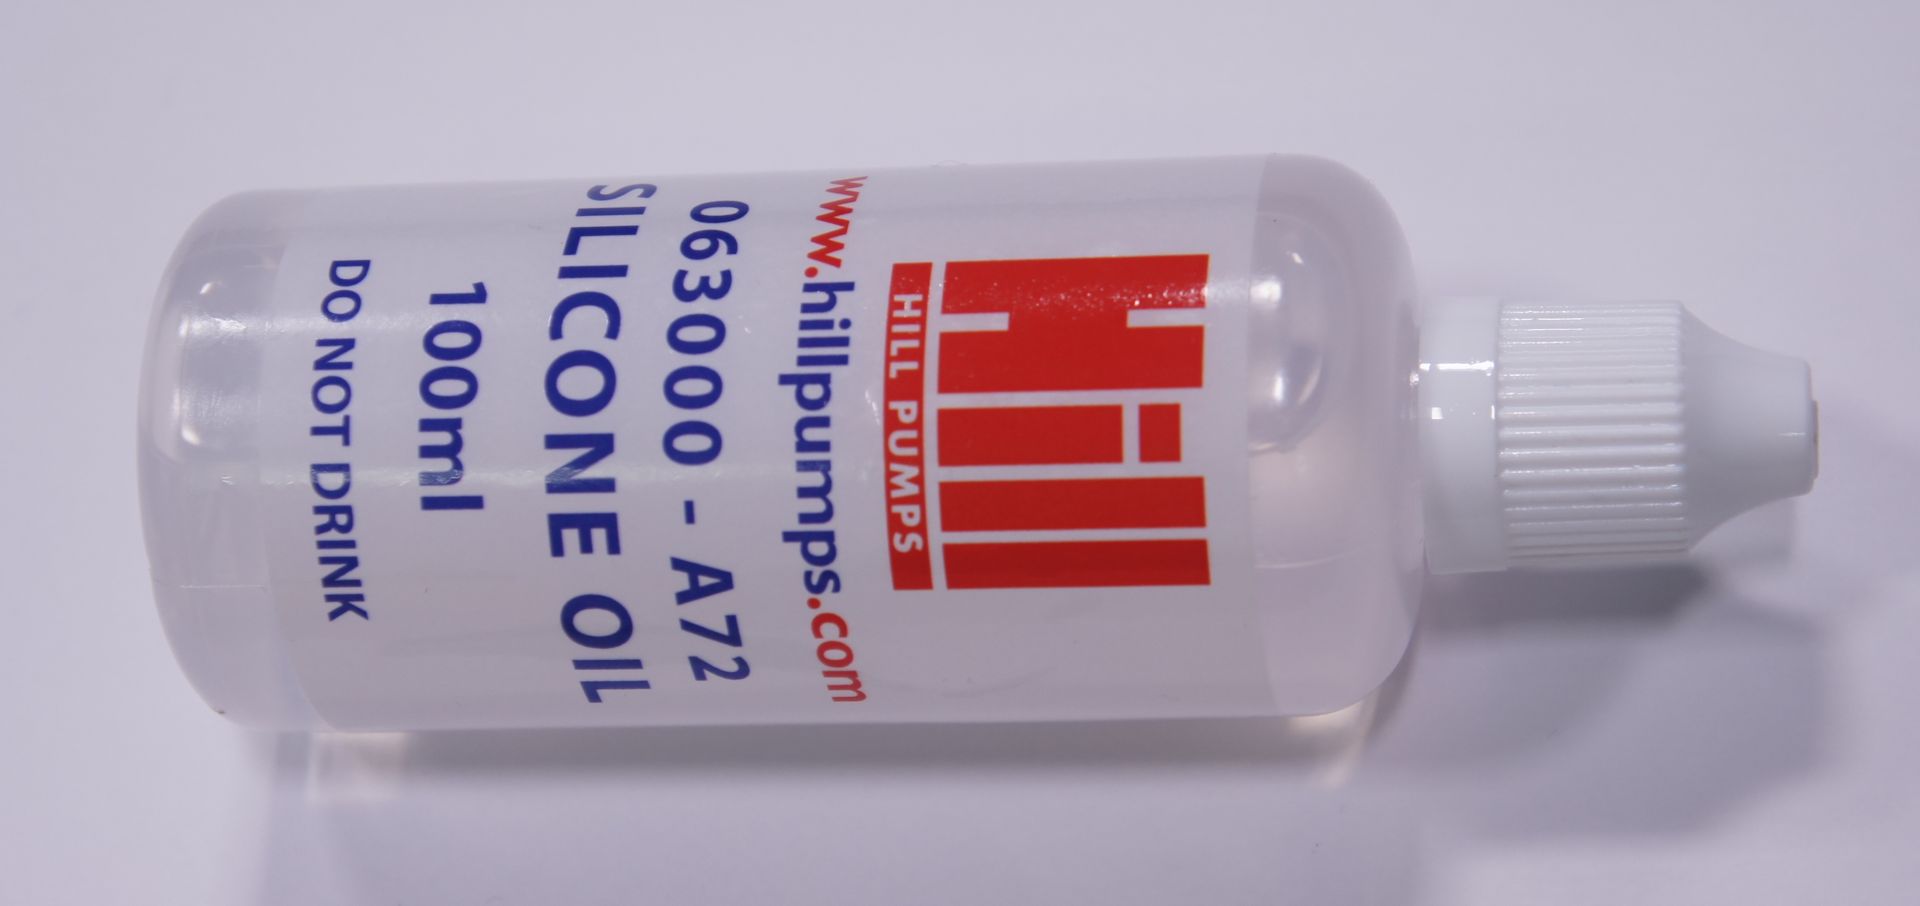 Silikonöl für Hill Tischkompressor, 100ml bottle of silicone oil